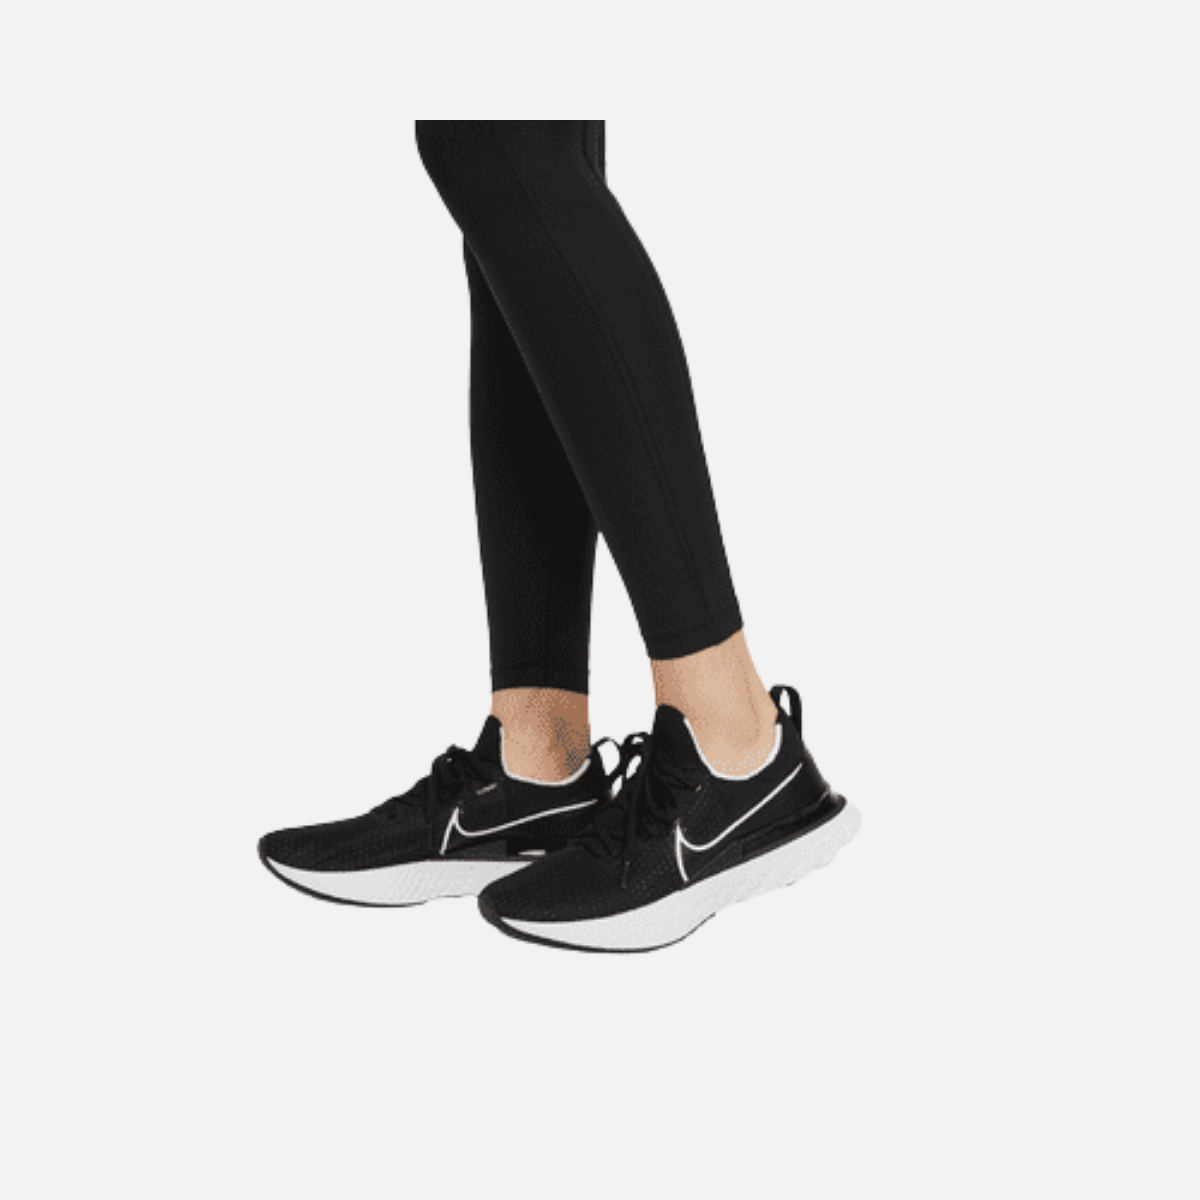 Women's Nike Epic Fast Running Leggings